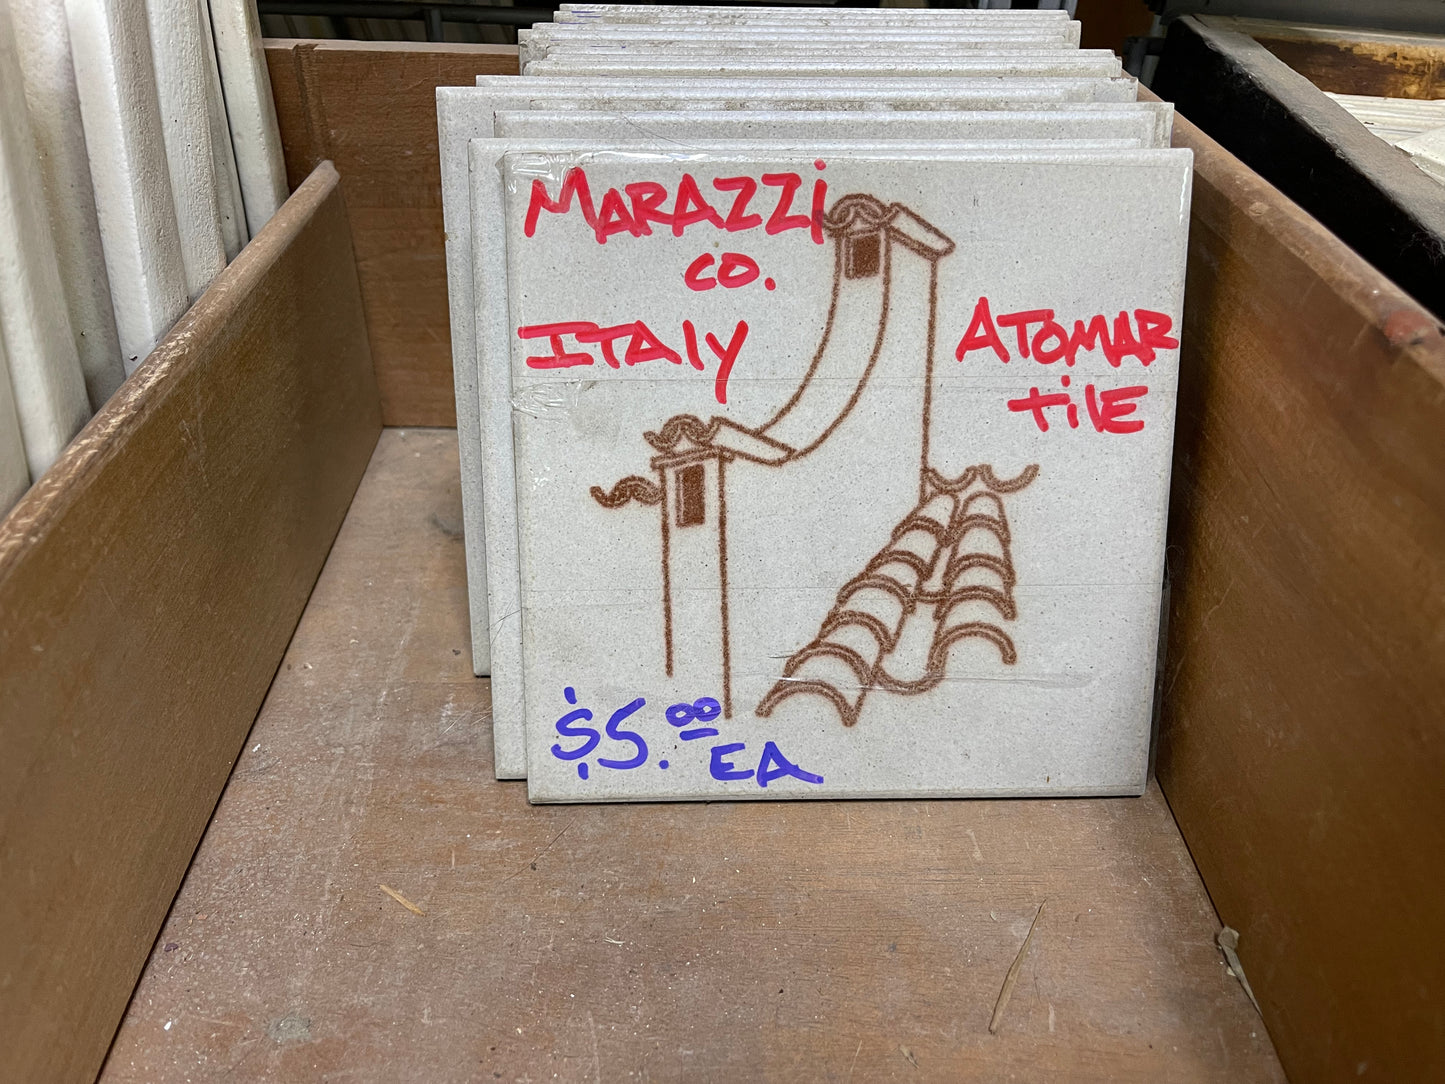 Marazzi Co. Atomar Tile